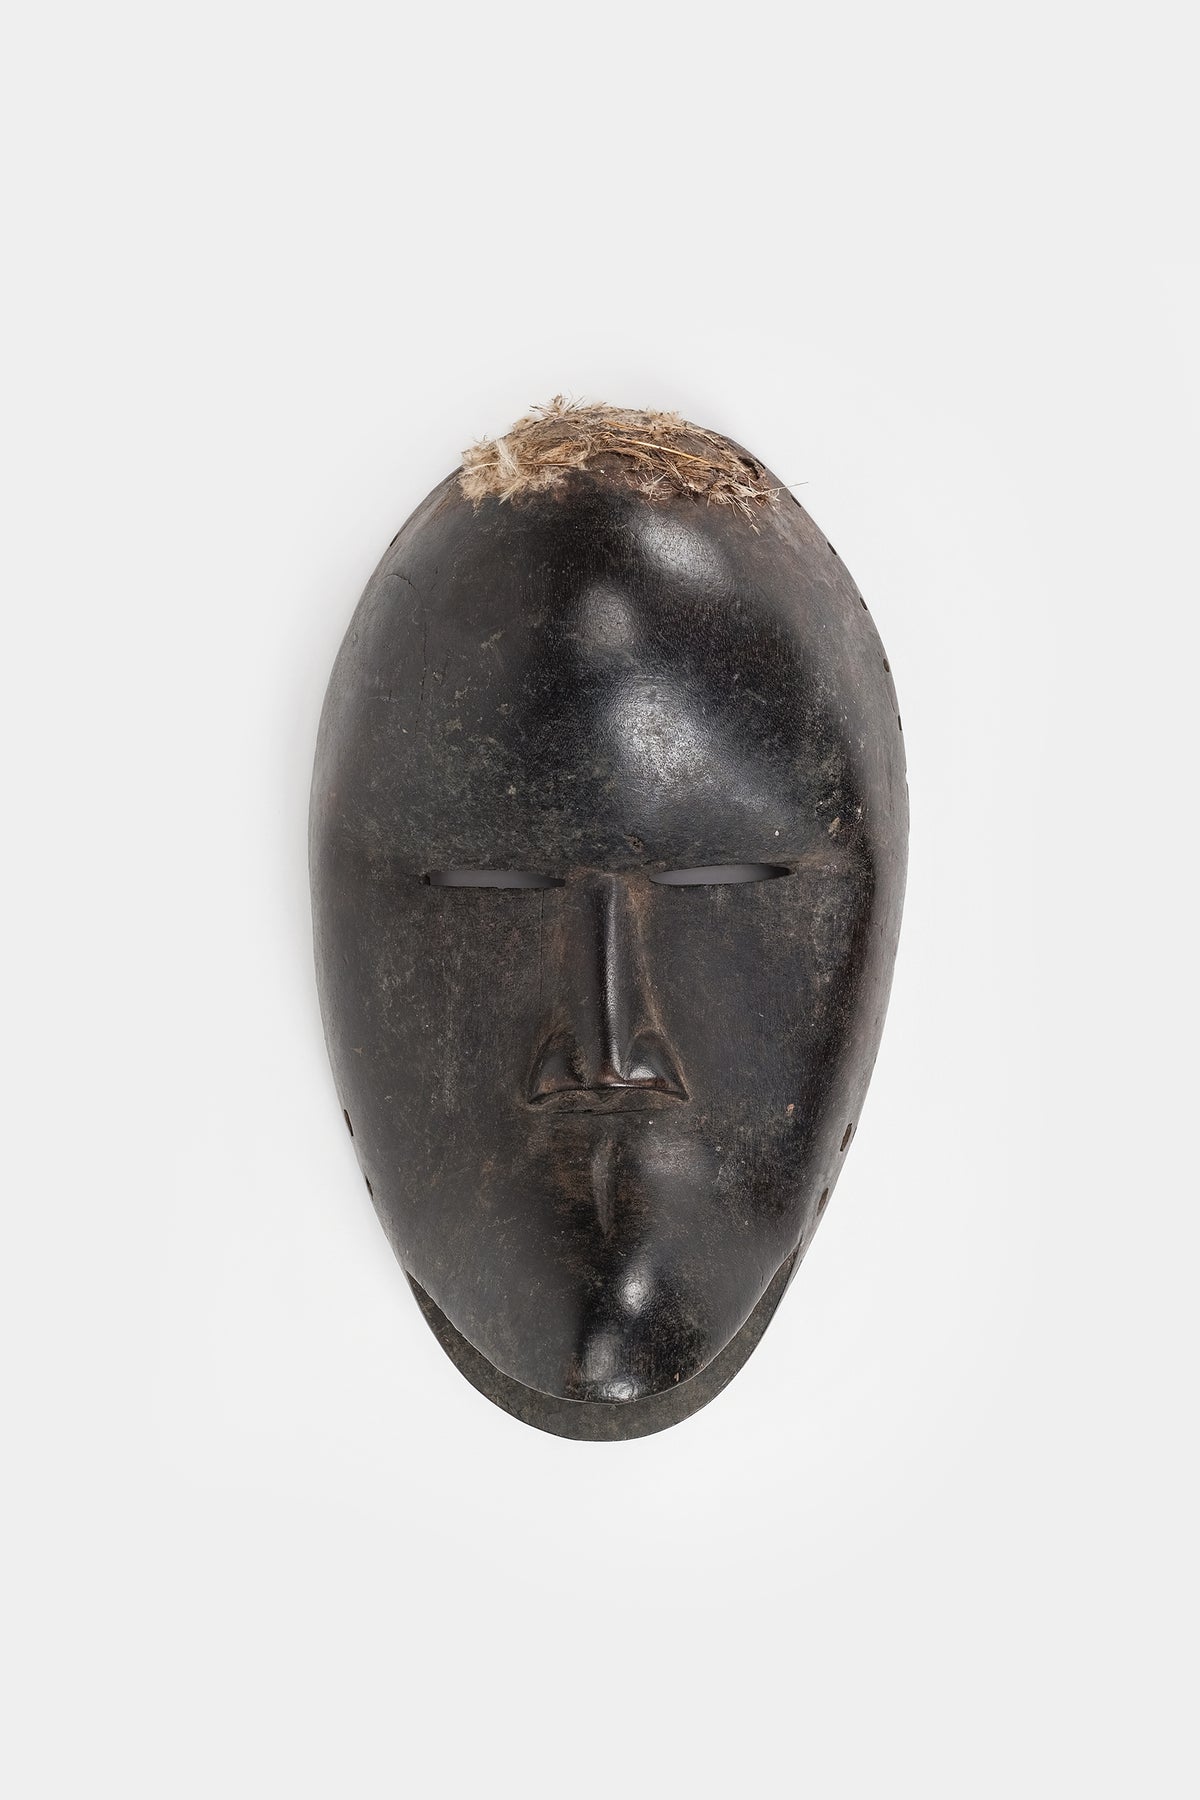 Mask, Ivory Coast, 20s